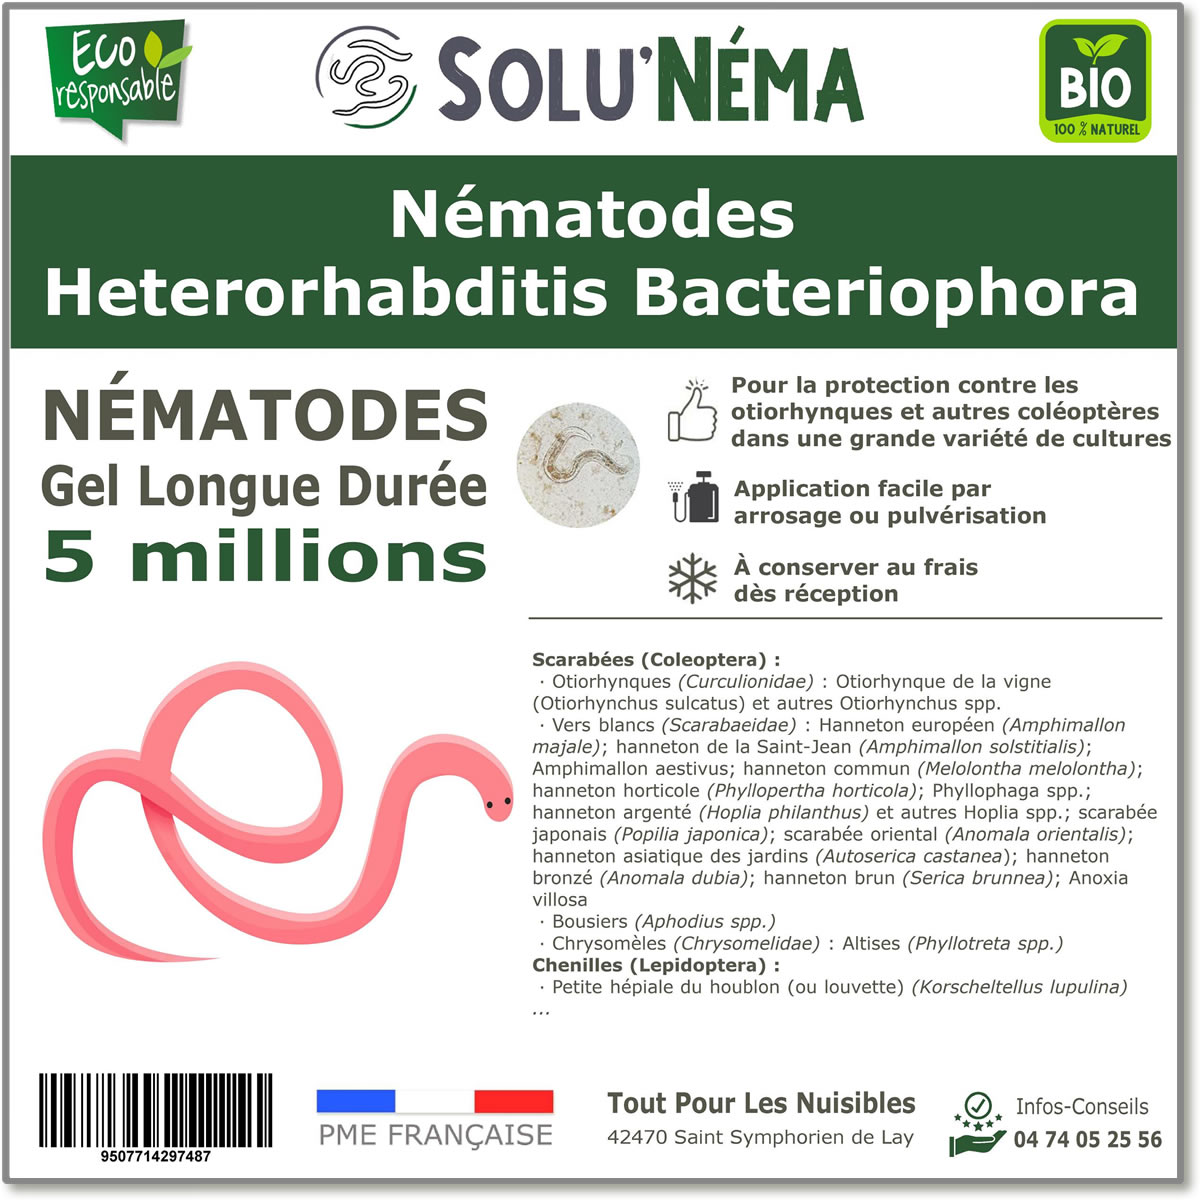 5 Millions de nématodes Heterorhabditis Bacteriophora (HB)